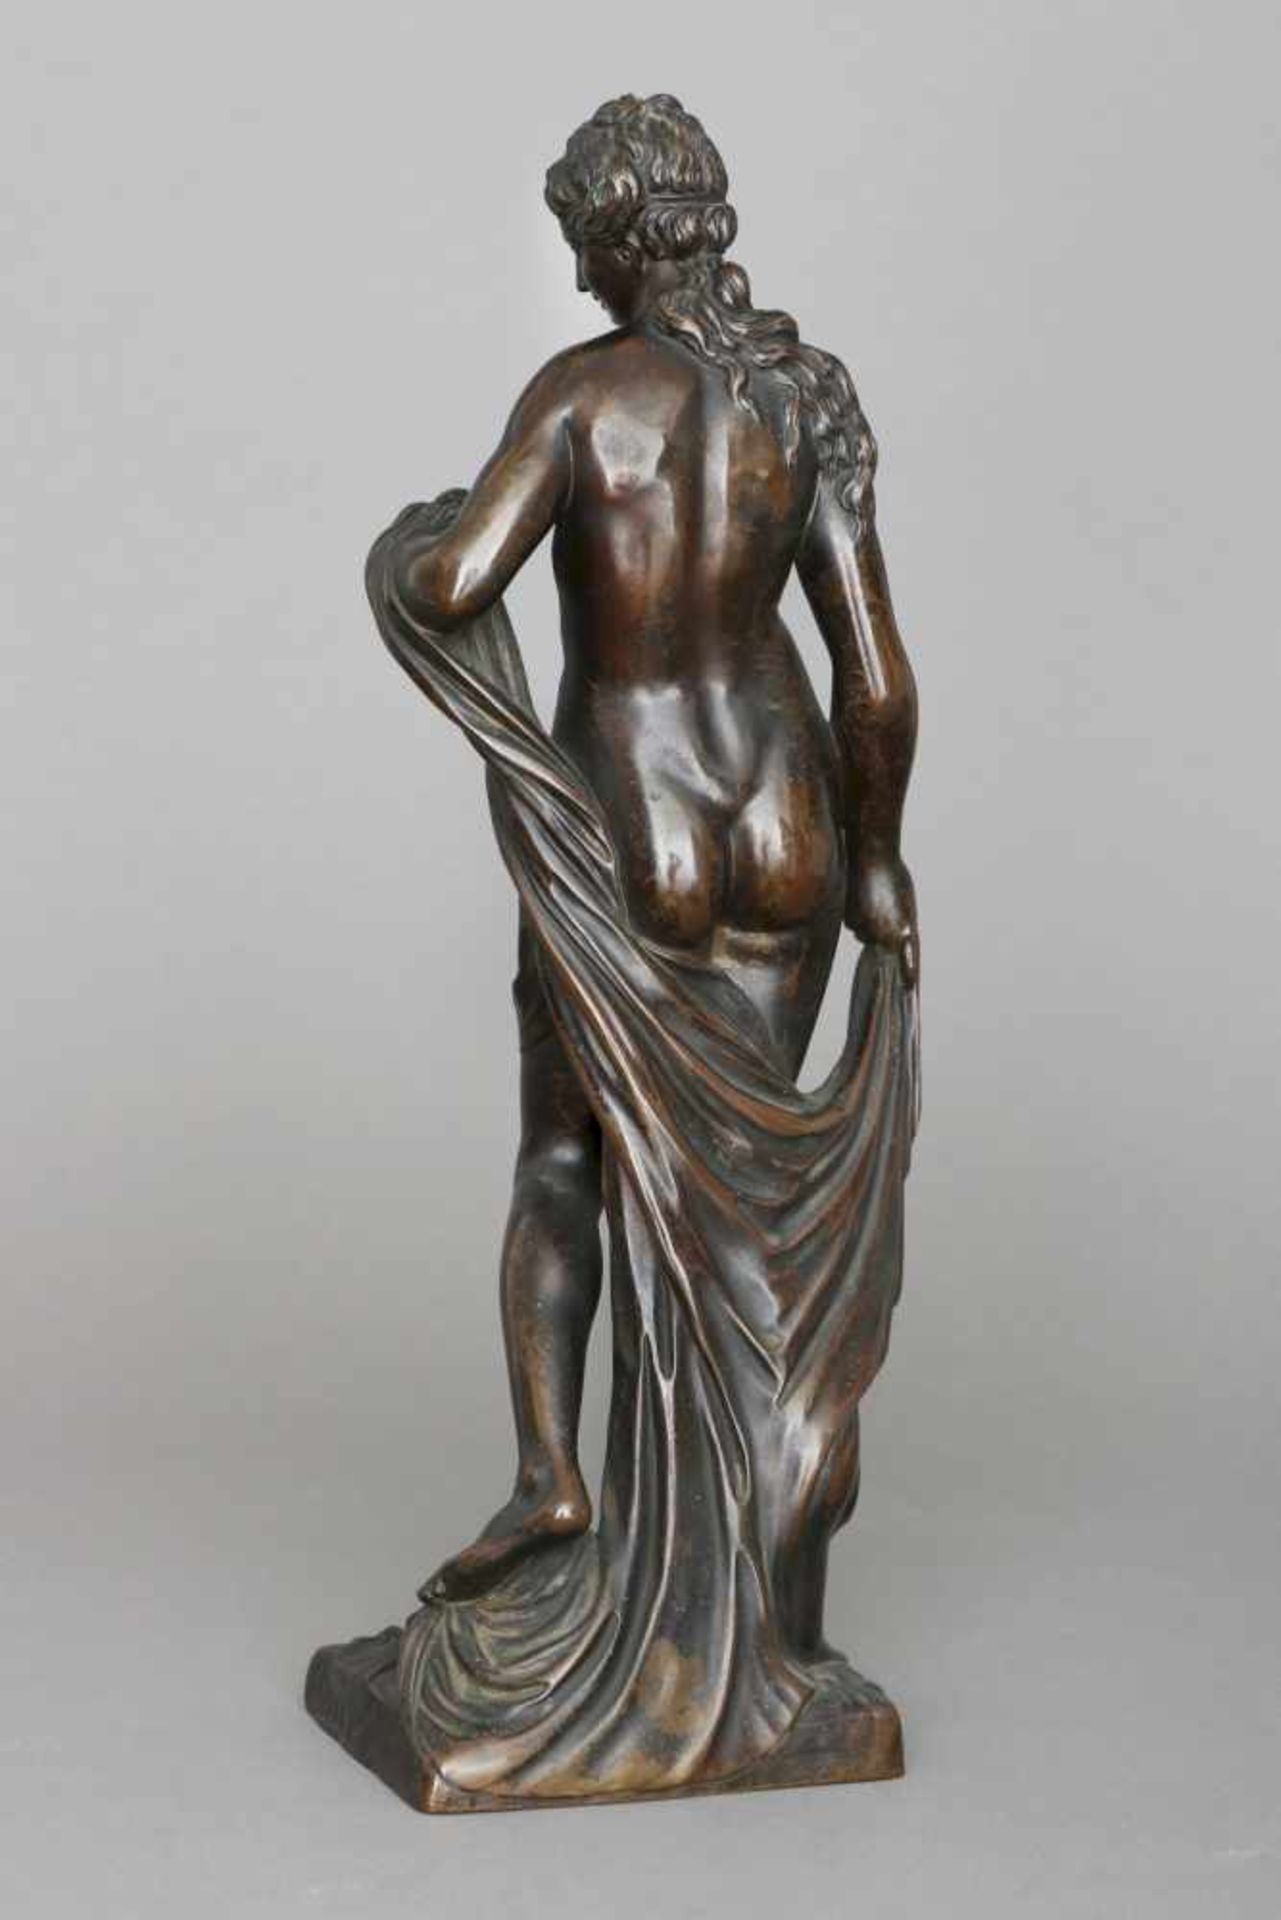 MICHEL ANGUIER (1612 Eu/Frankreich - 1686 Paris) Bronzefigur ¨Amphitrite¨dunkel patiniert, - Image 3 of 3